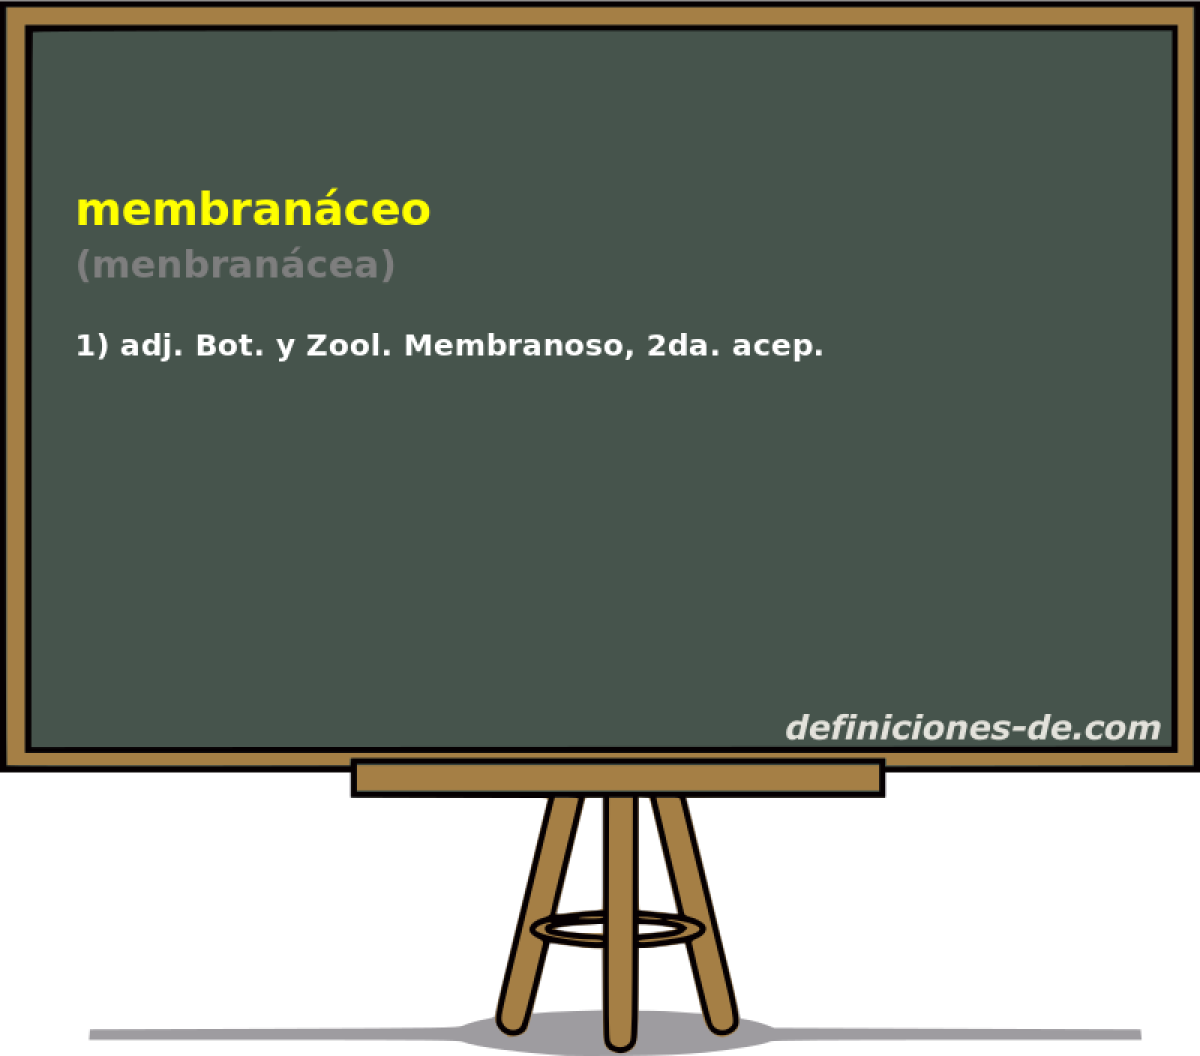 membranceo (menbrancea)